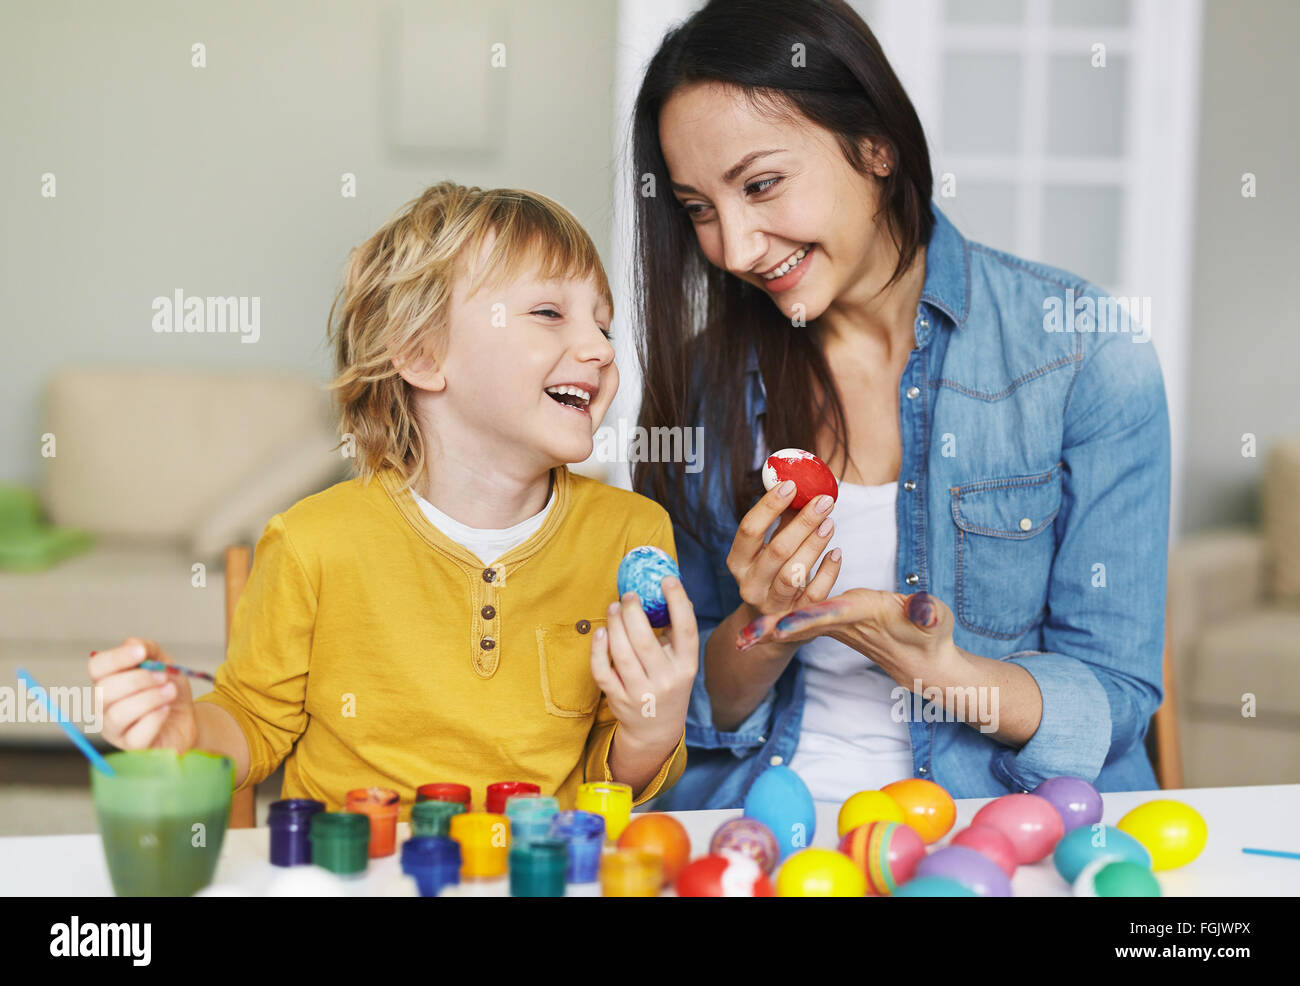 Junge Frau und kleine Junge bemalen von Ostereiern Stockfoto